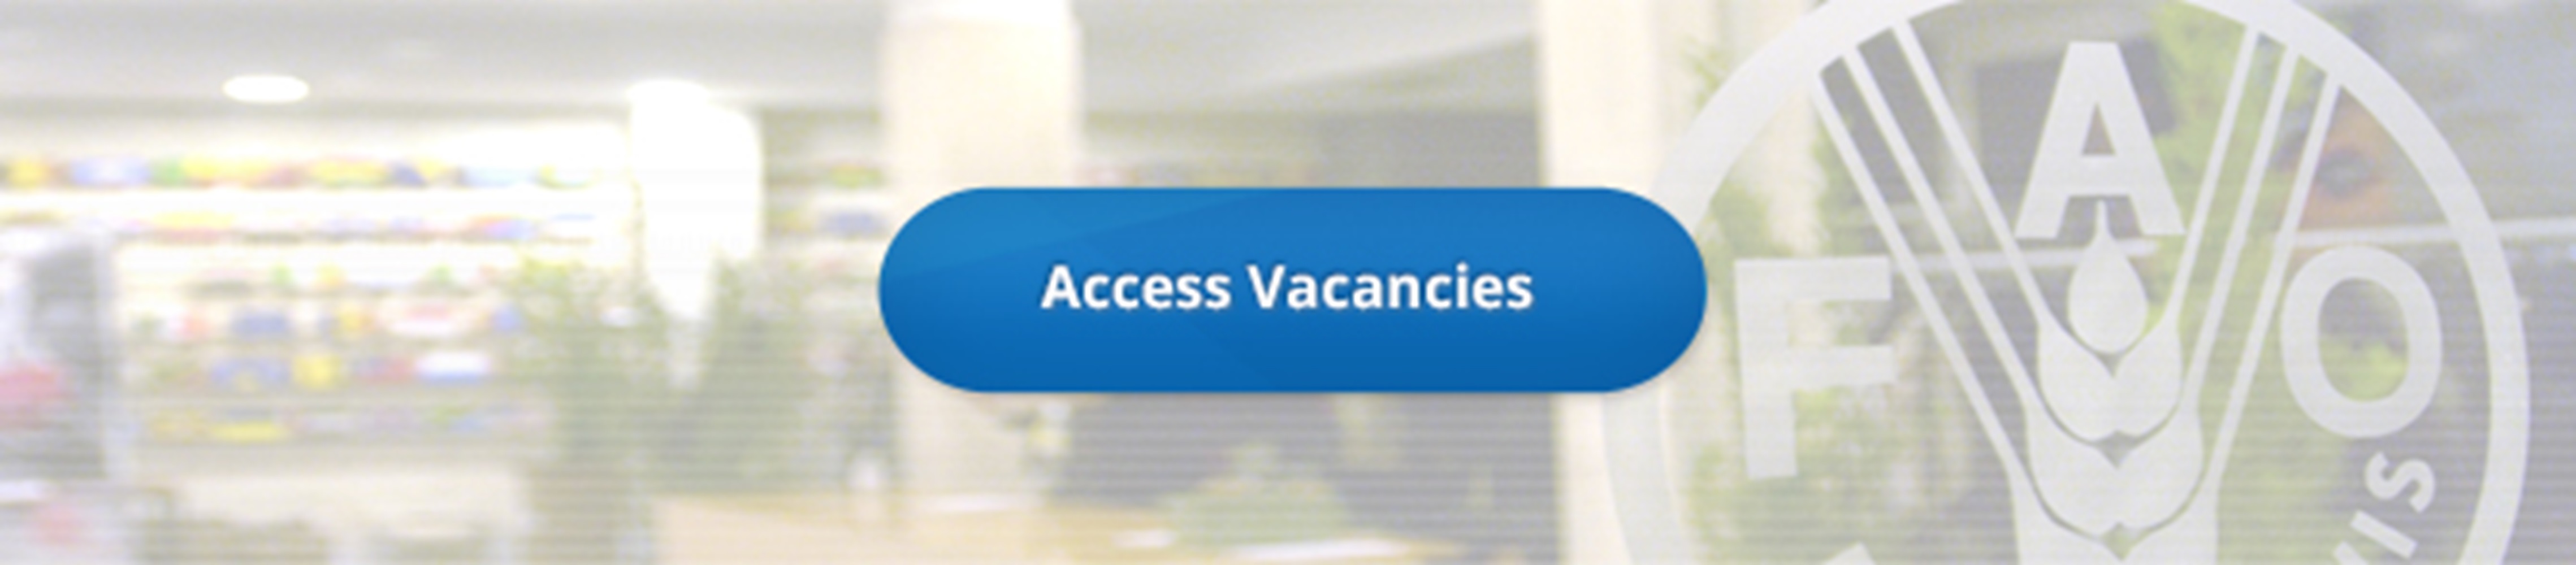 en_access-vacancies.tmb--5000-1000